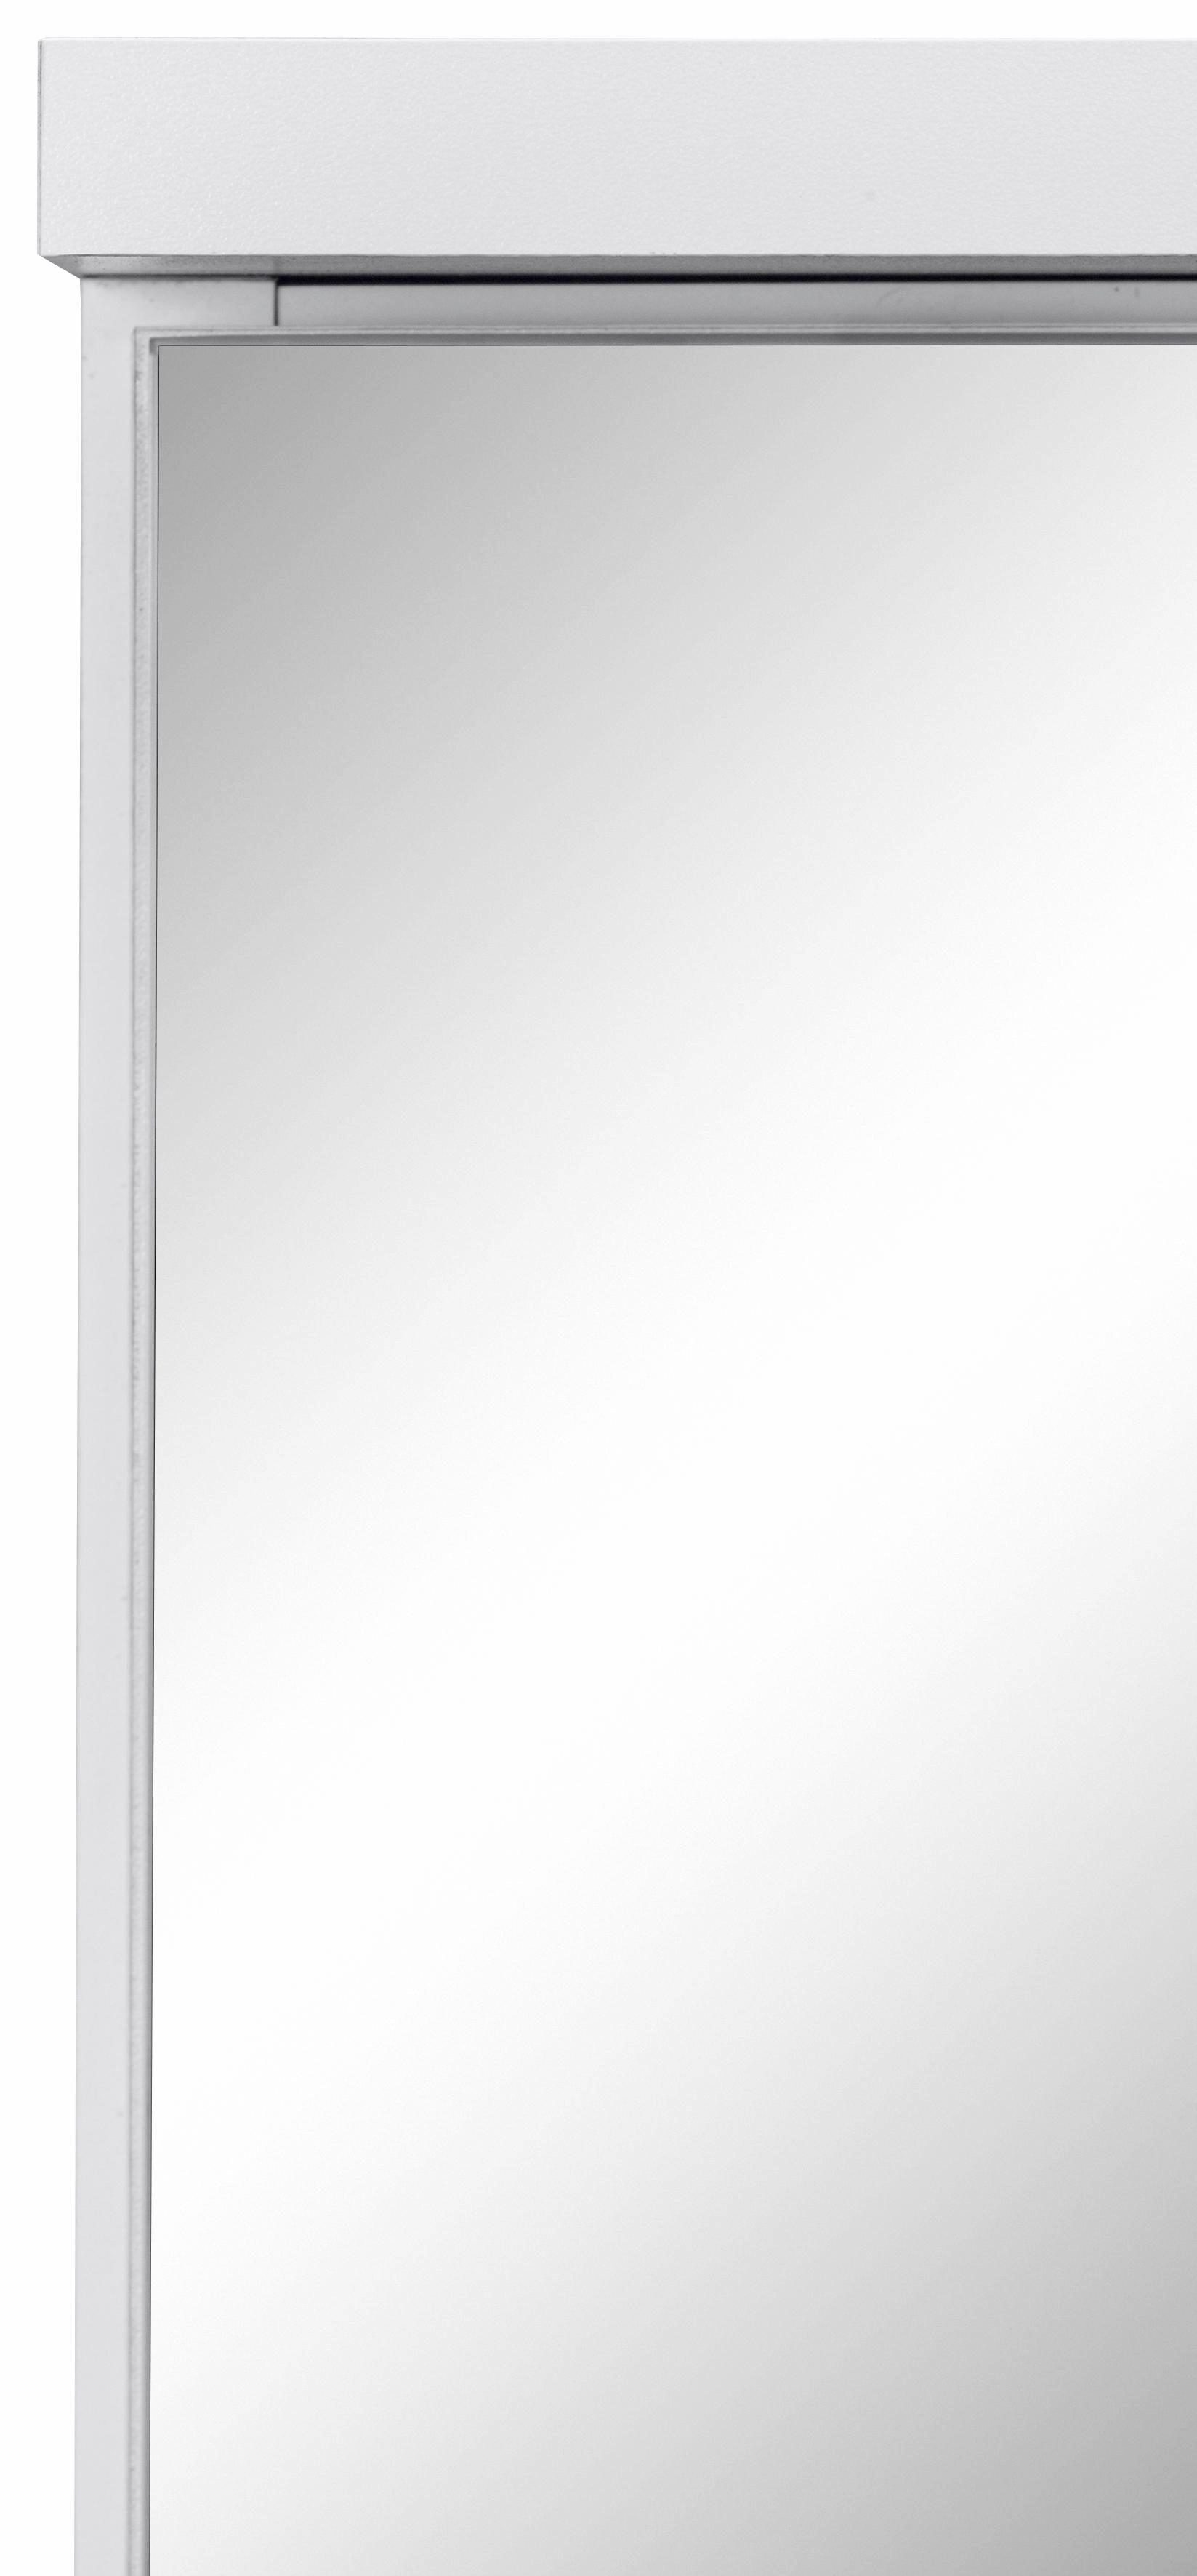 HELD MÖBEL Spiegelschrank Ravenna weiß 100 cm weiß Breite 